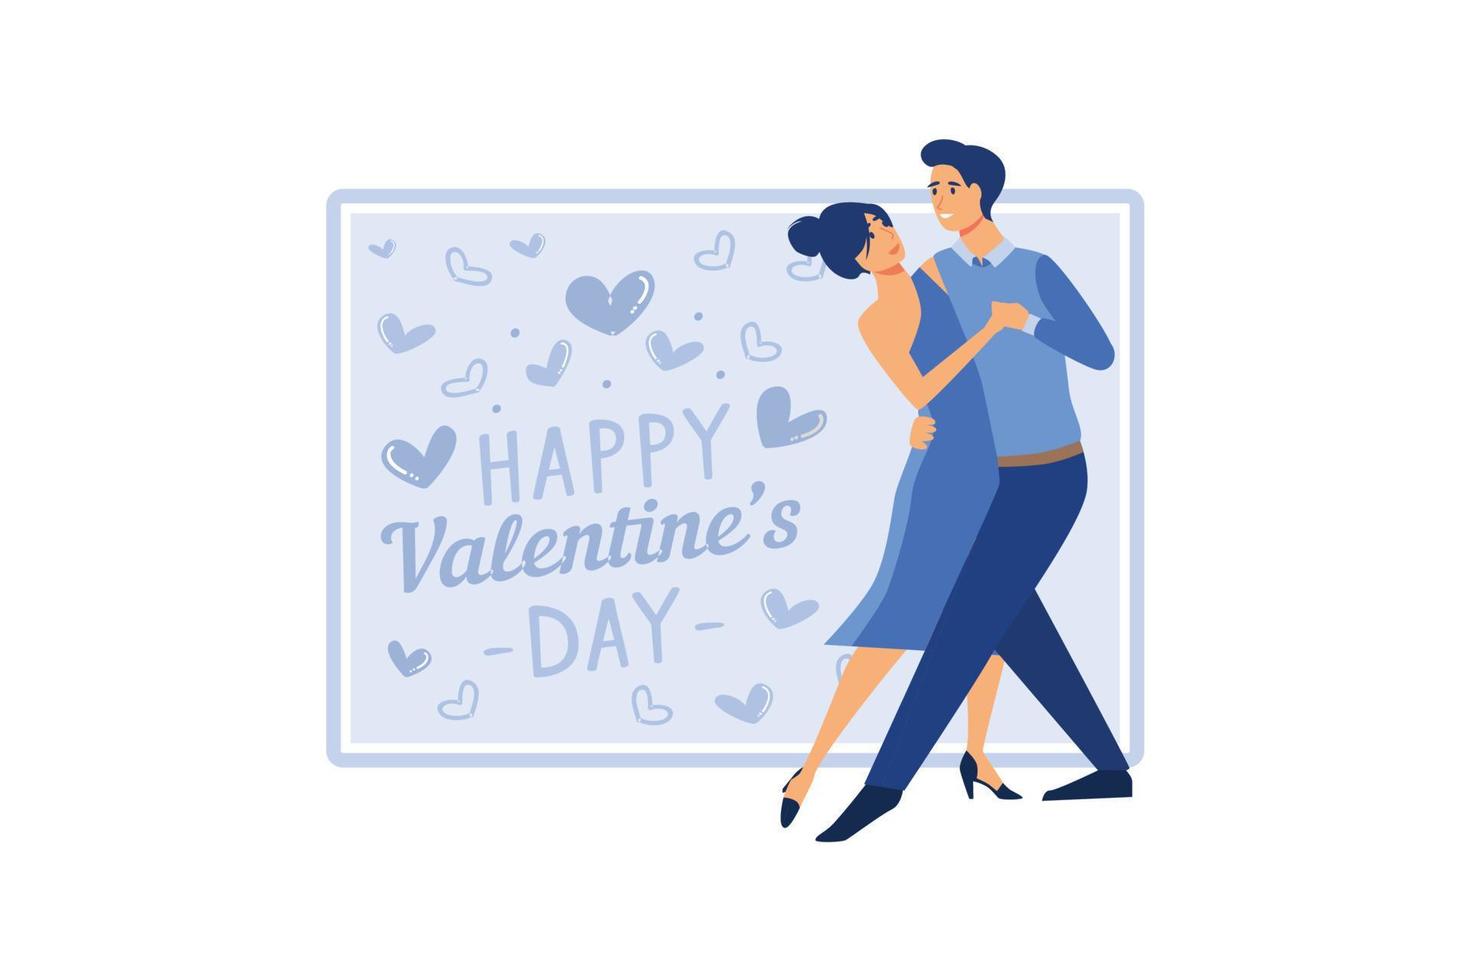 coppia innamorata. buon San Valentino. il 14 febbraio è il giorno di tutti gli innamorati. grafica adatta per decorare poster, brochure, cartoline, volantini illustrazione vettoriale piatta